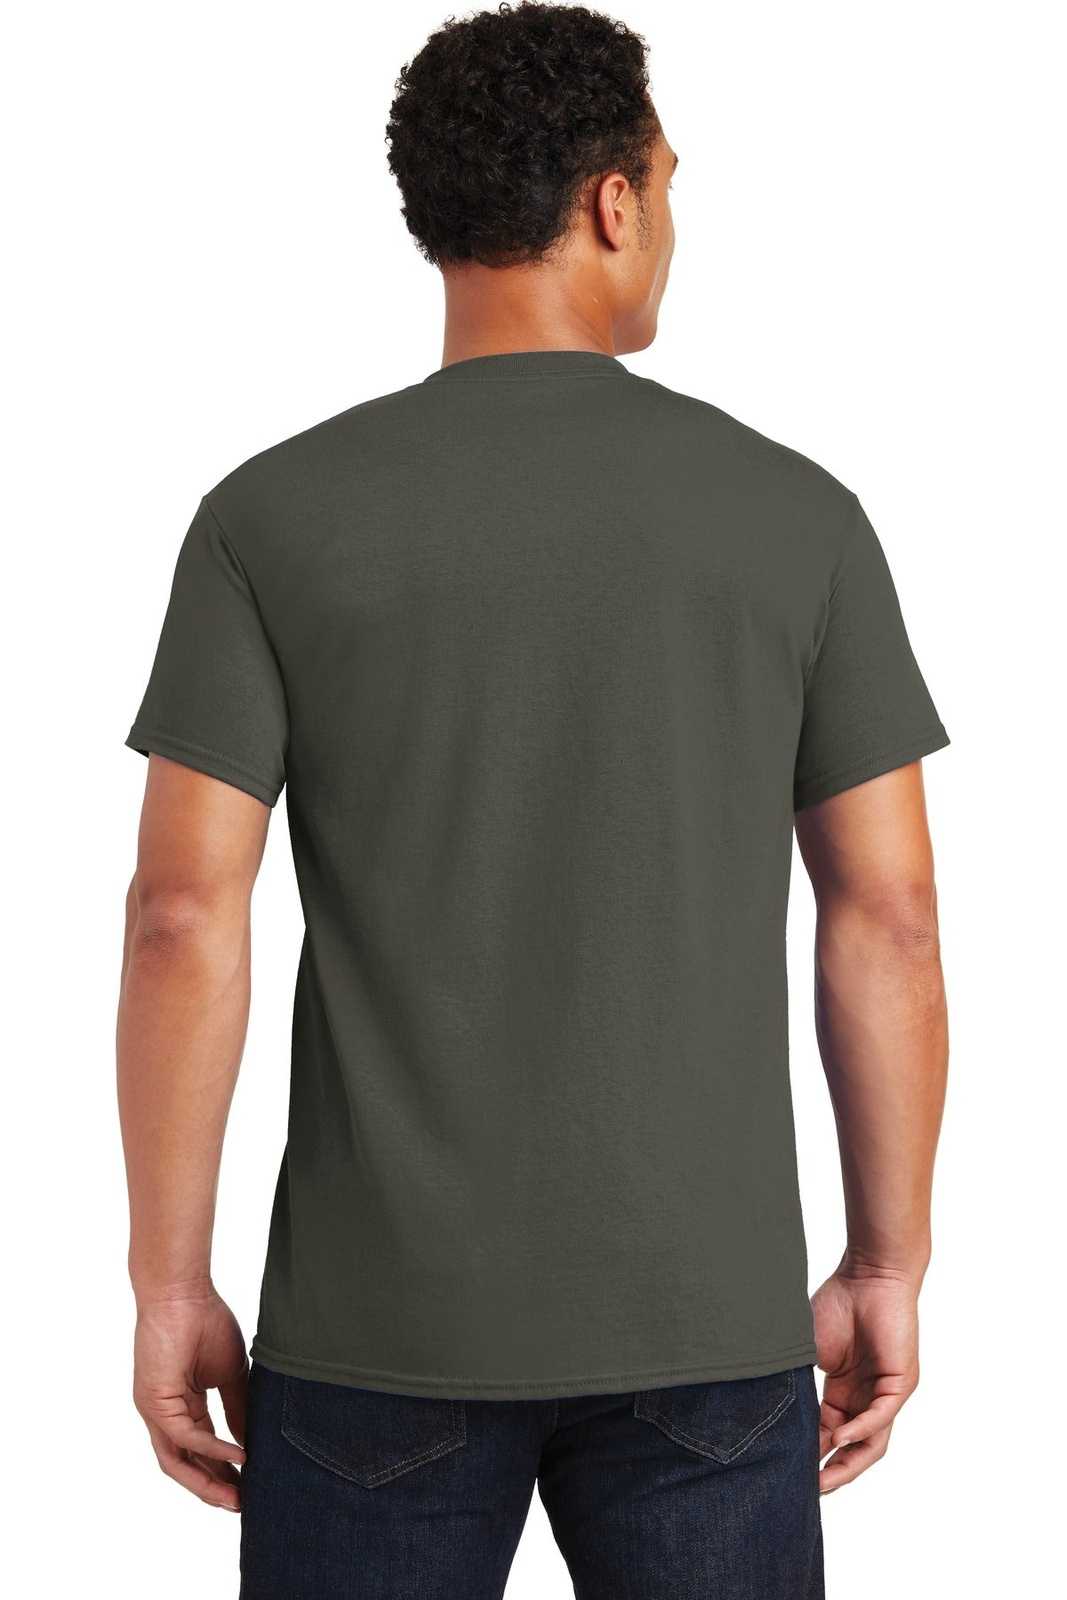 Gildan 2000 Ultra Cotton 100% Cotton T-Shirt - Olive - HIT a Double